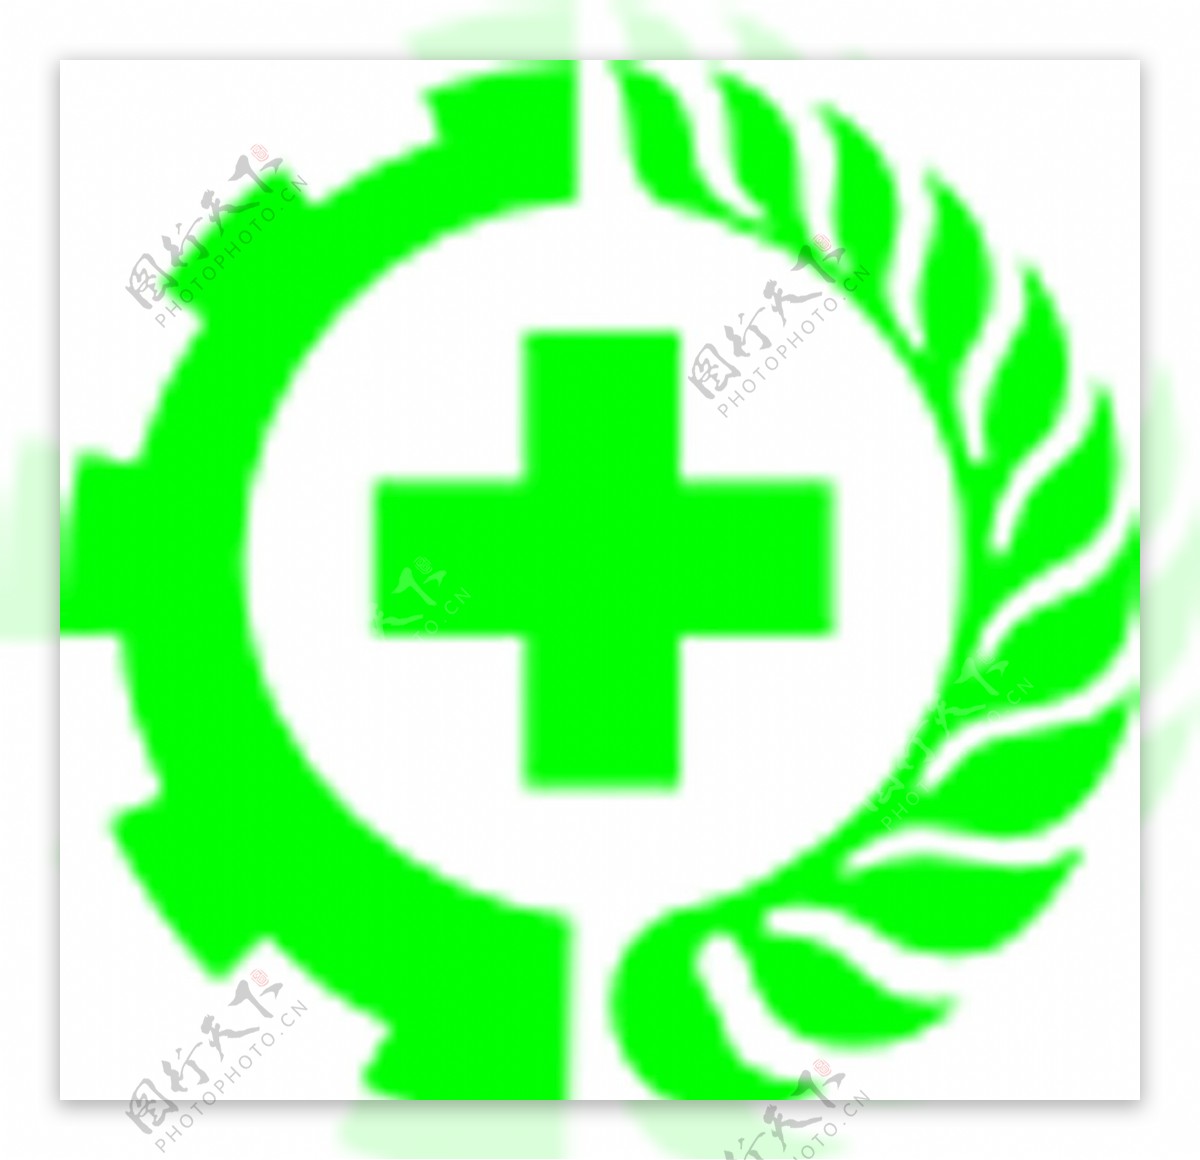 安全生产标志绿十字安全